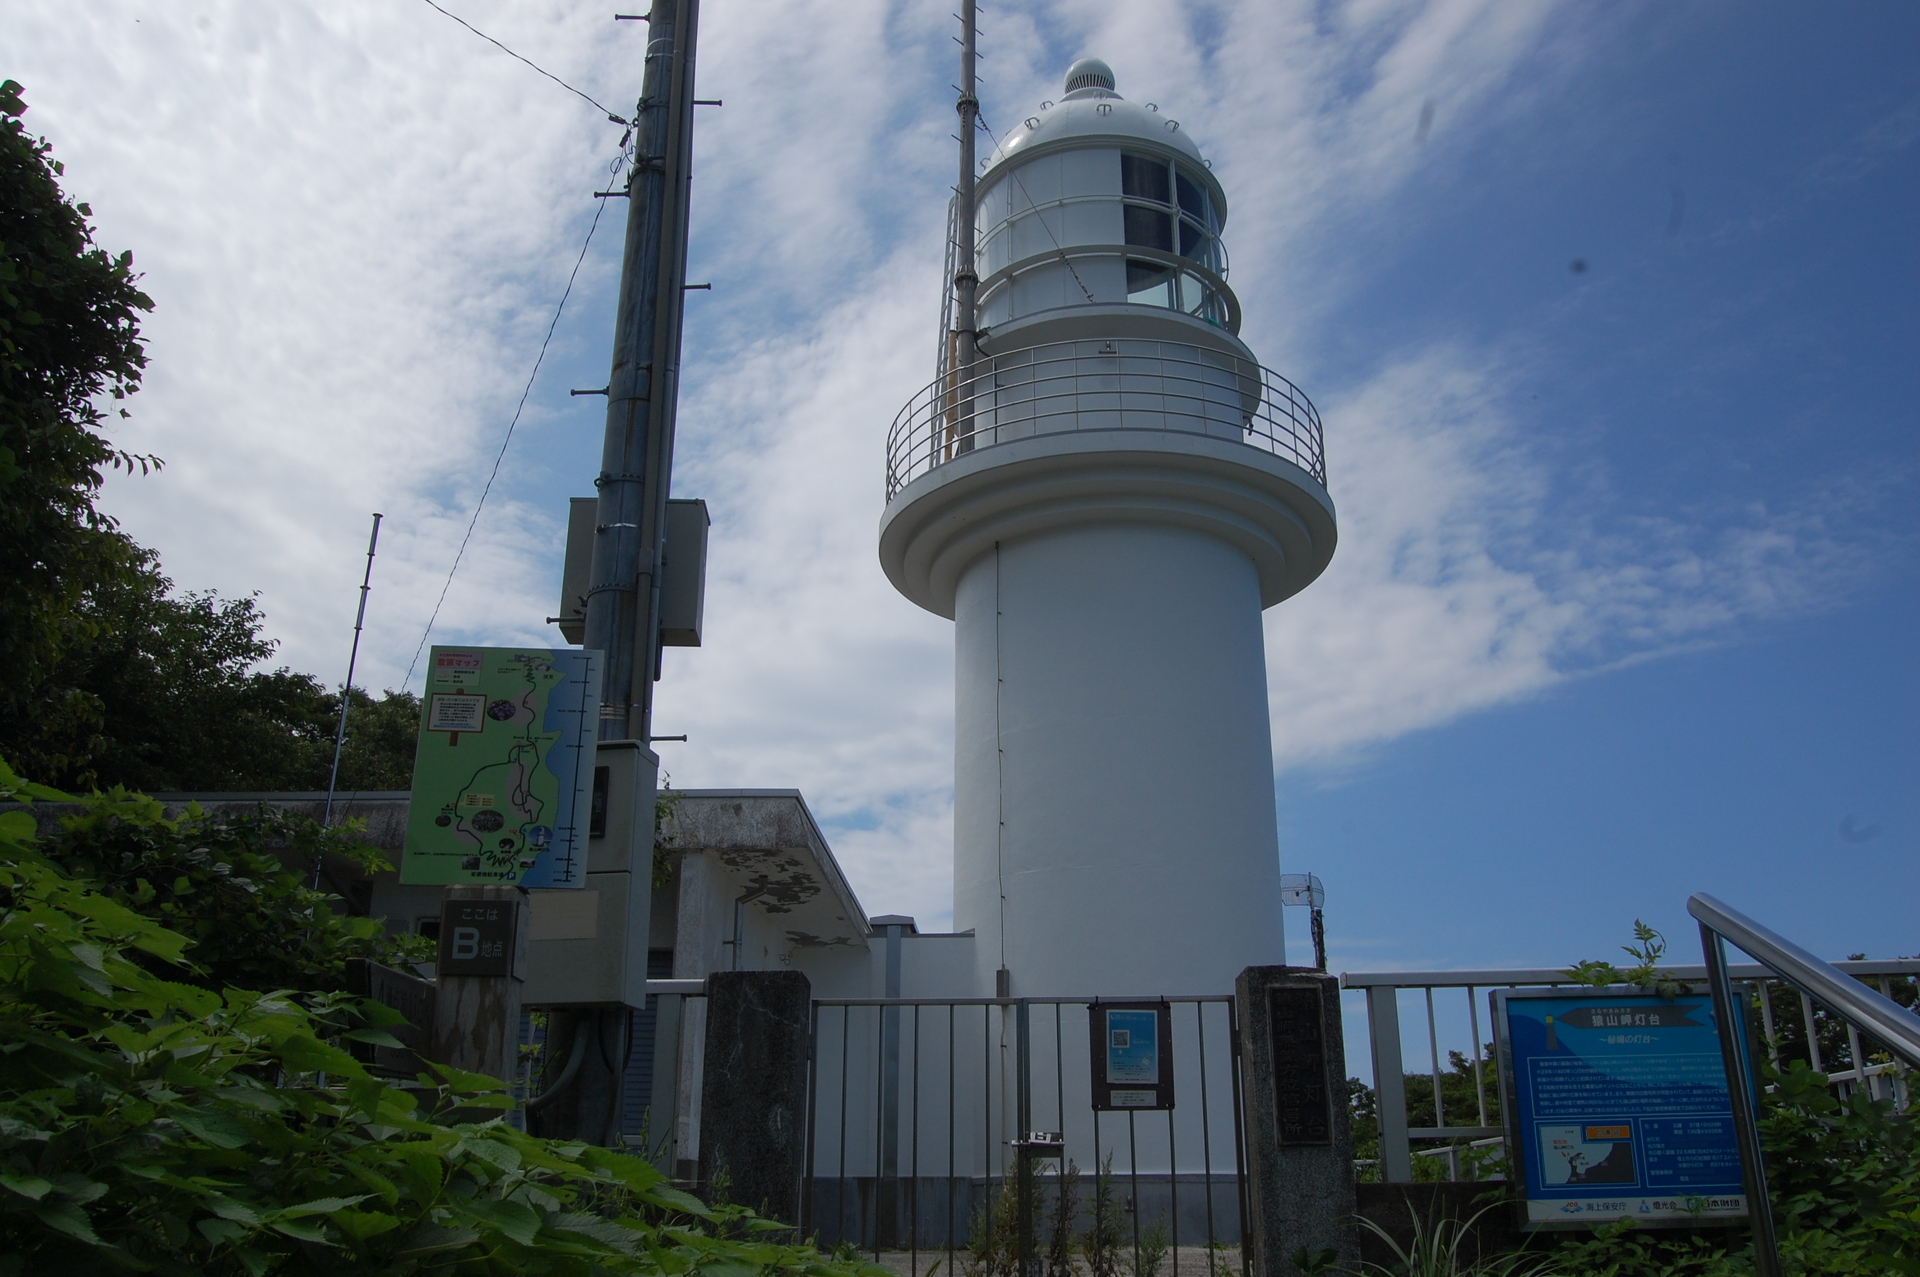 日本の風景 灯台があった 猿山岬灯台 壁紙19x1277 壁紙館